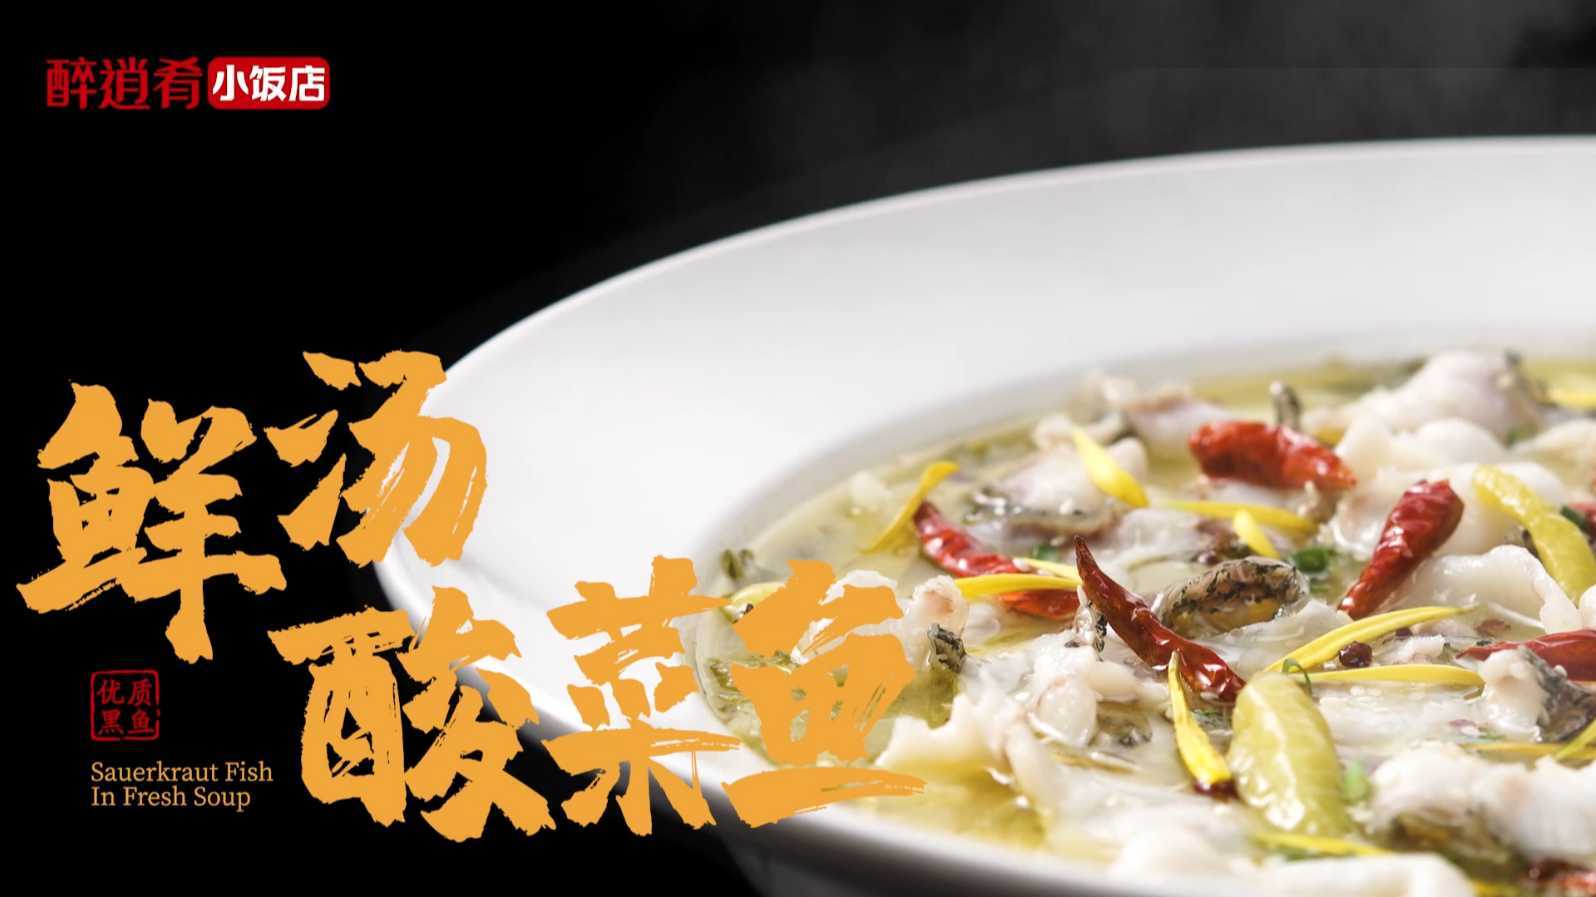 鲜汤酸菜鱼-菜品TVC广告